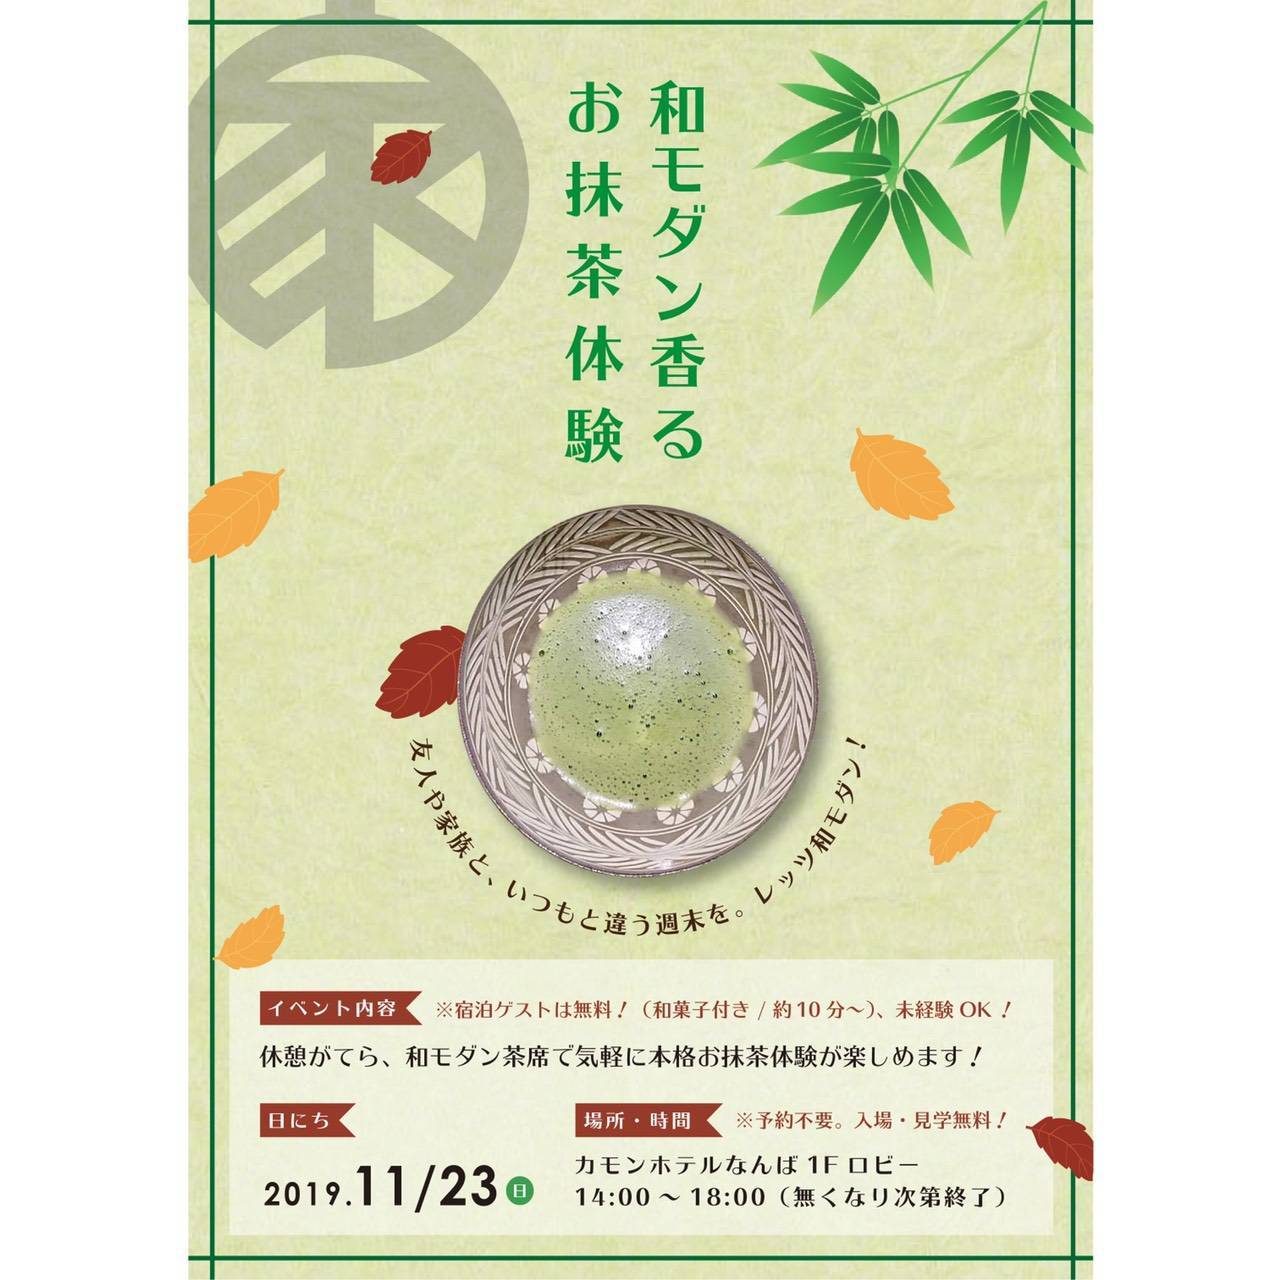 11/23抹茶体験イベント開催のお知らせ